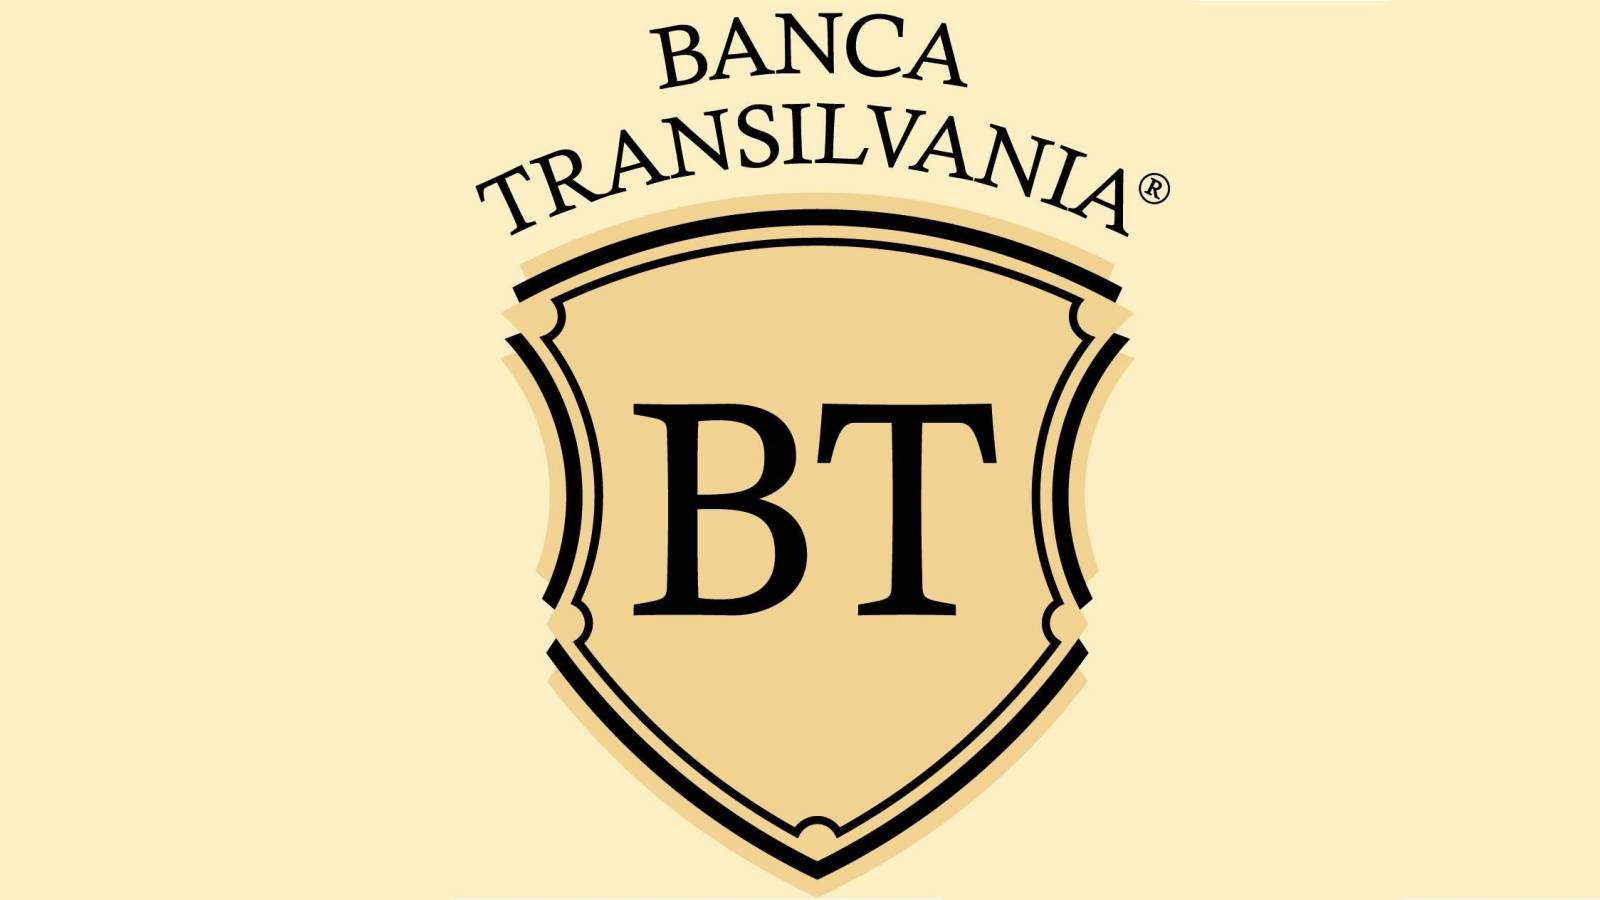 BANCA Transilvania 2 LAST MINUTE Informazioni ufficiali rivolte alla clientela rumena